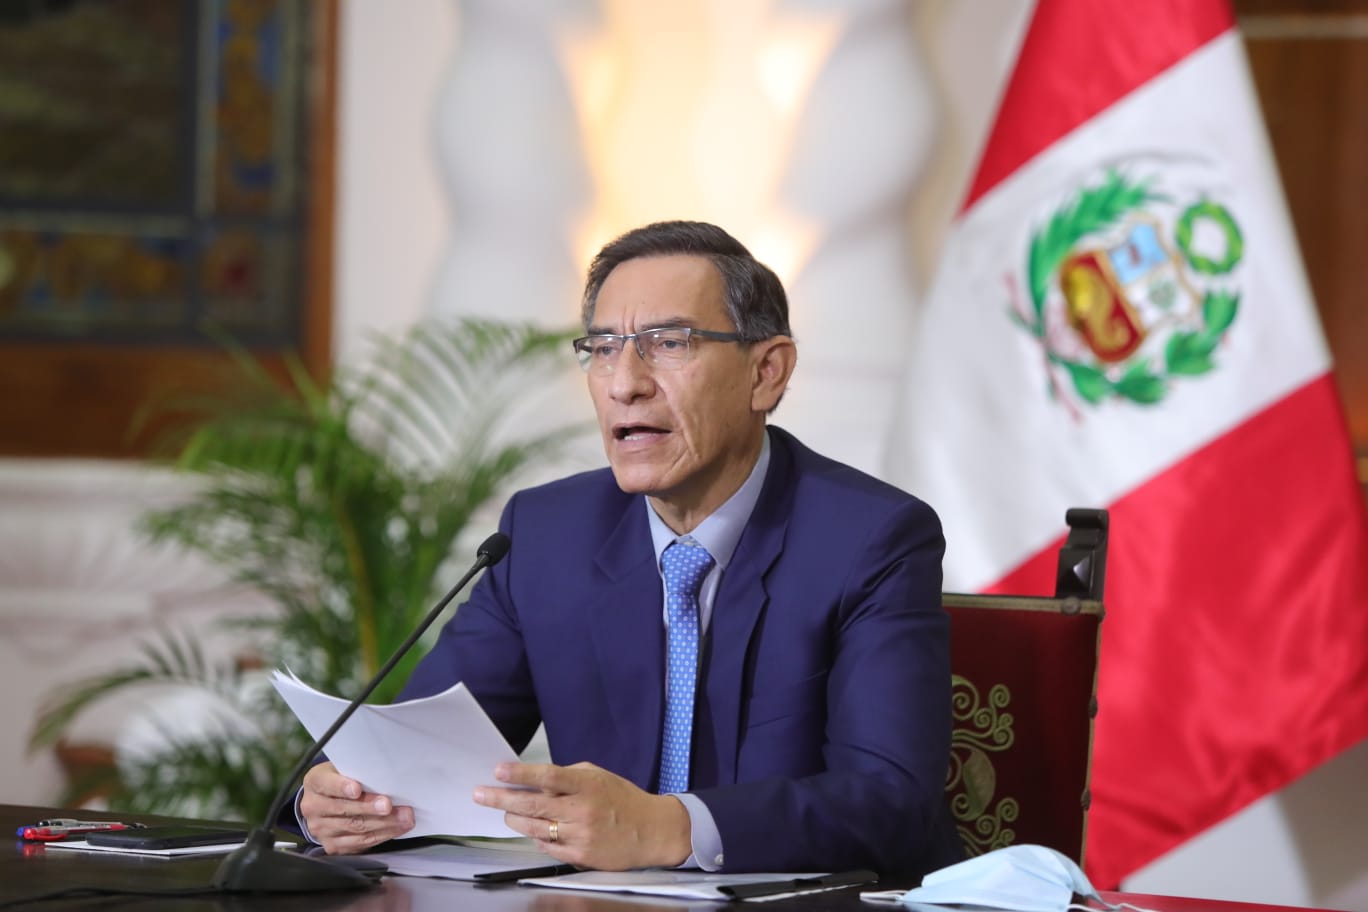 Martín Vizcarra convoca a elecciones generales para el 11 de abril del 2021